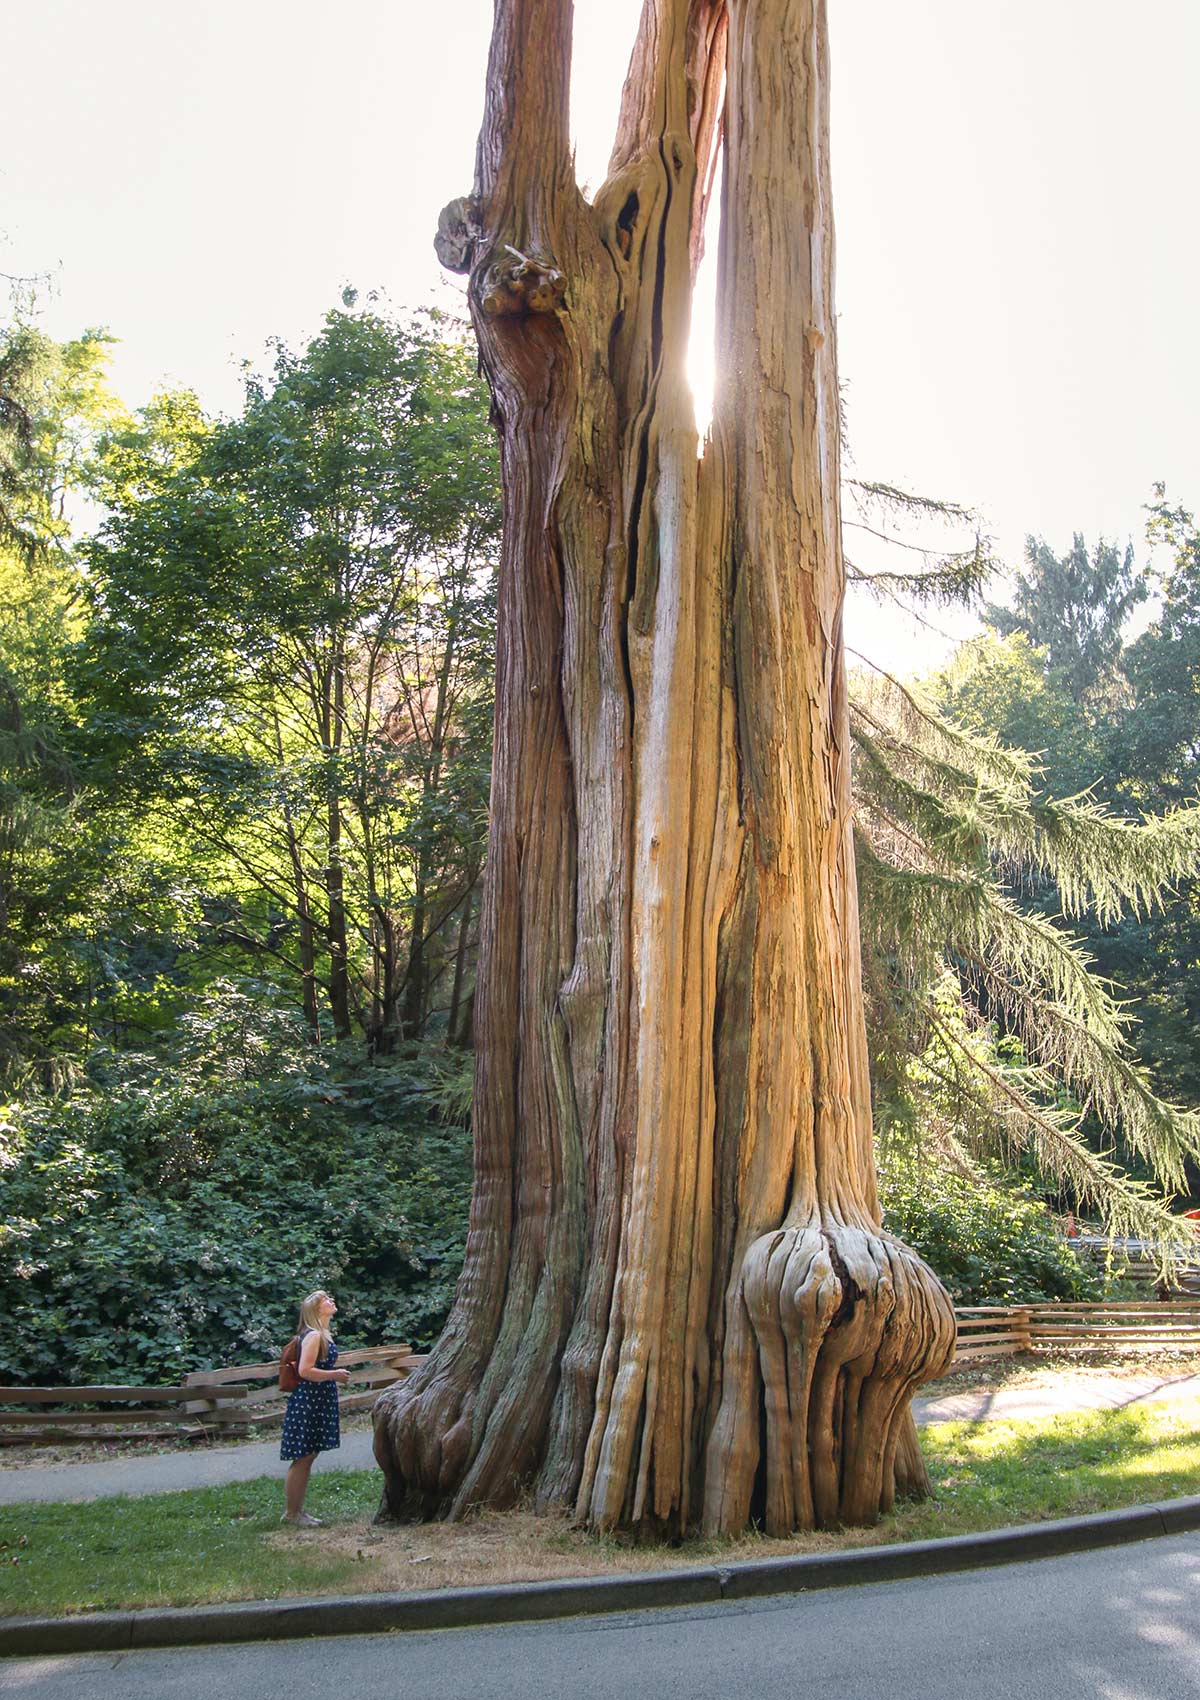 Arbre géant, Parc Stanley, Vancouver, Colombie-Britannique, Canada / Giant Tree, Stanley Park, Vancouver, BC, Canada